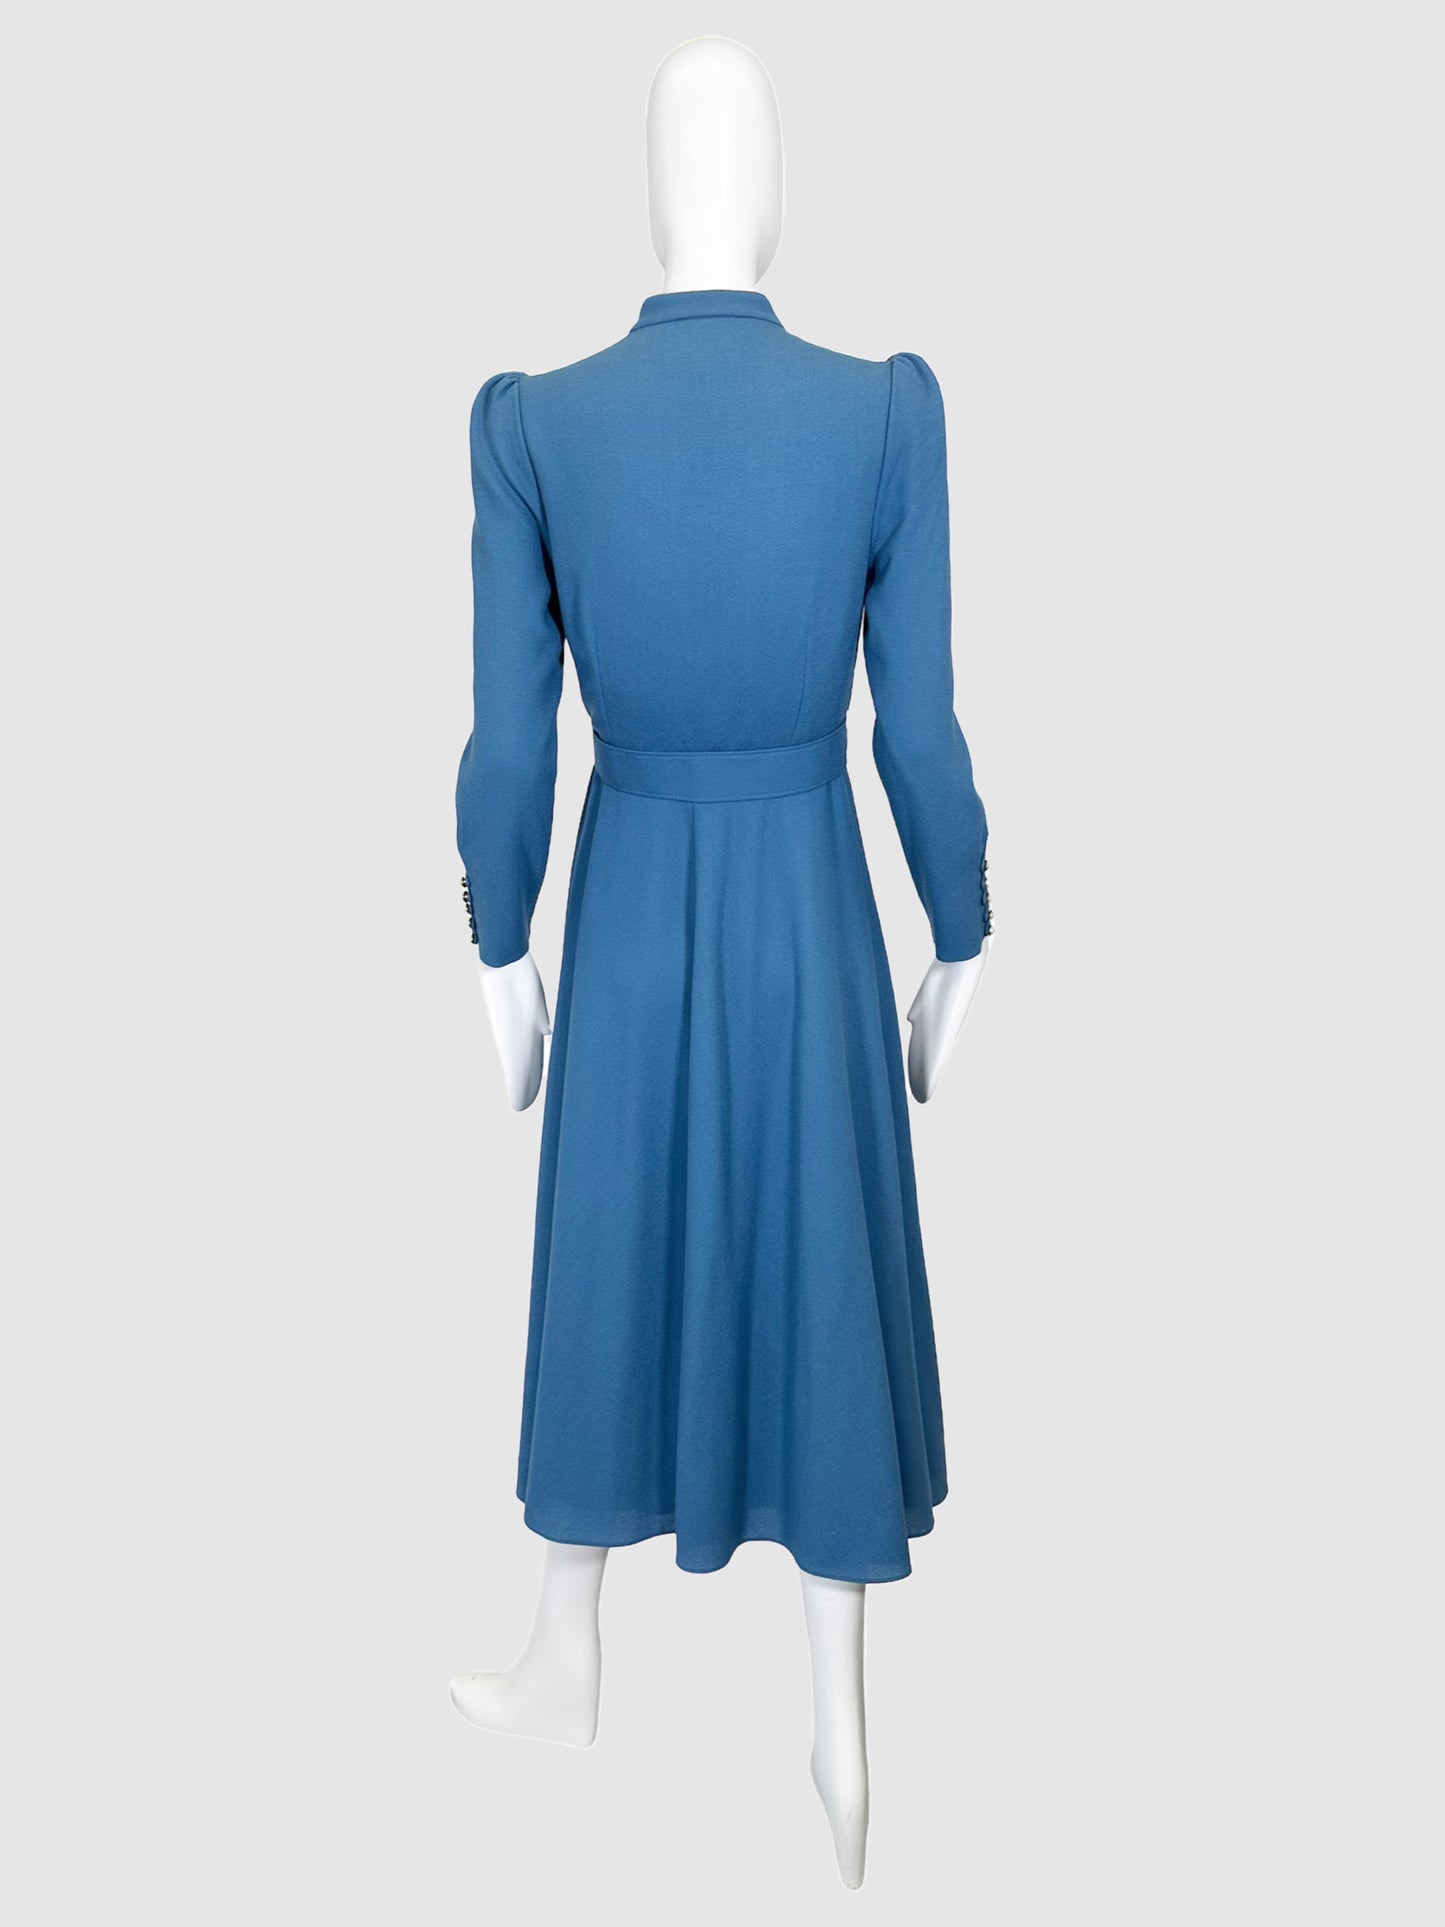 Beulah Mock Neck Long Dress - Size 6